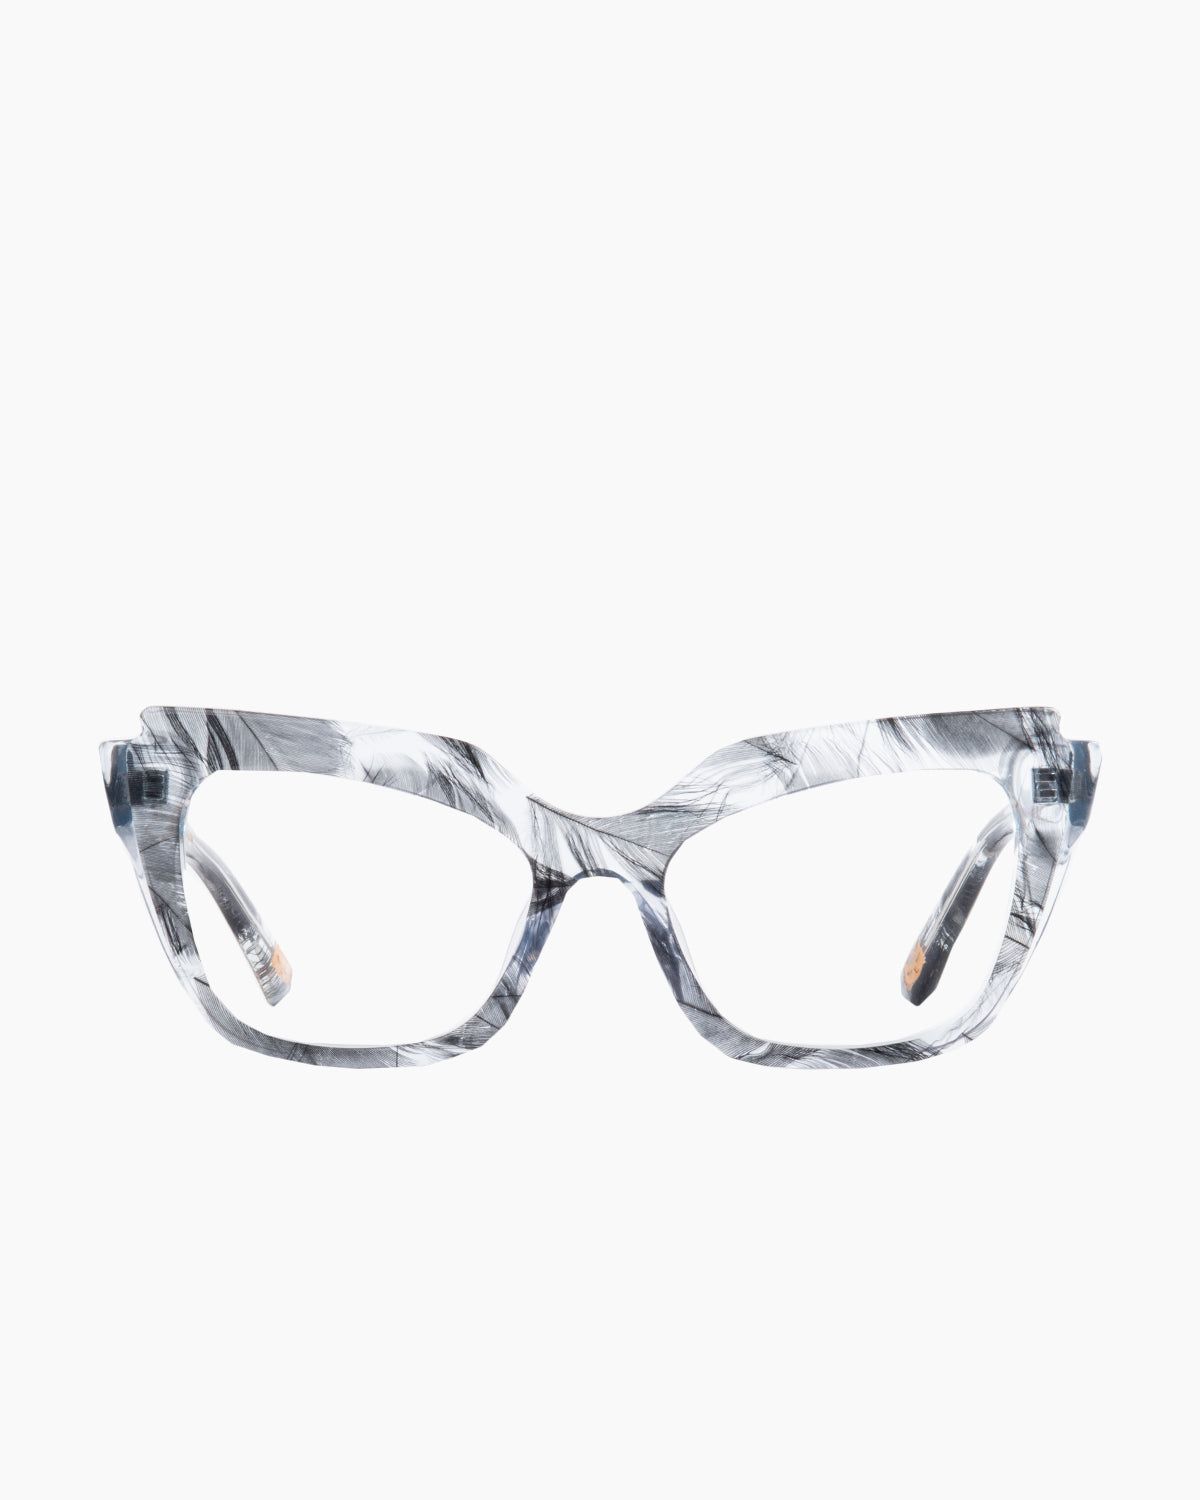 Spectacleeyeworks - Parisa - c459 | Bar à lunettes